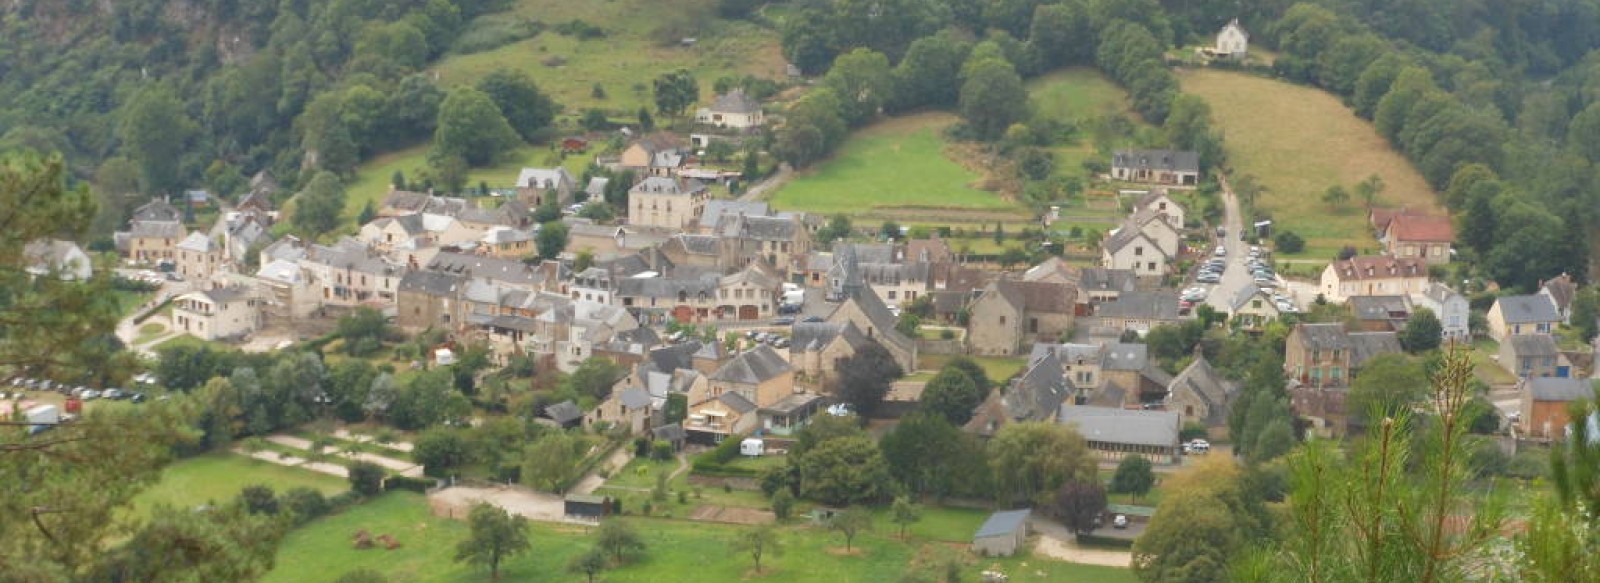 Village Saint-Leonard-des-Bois